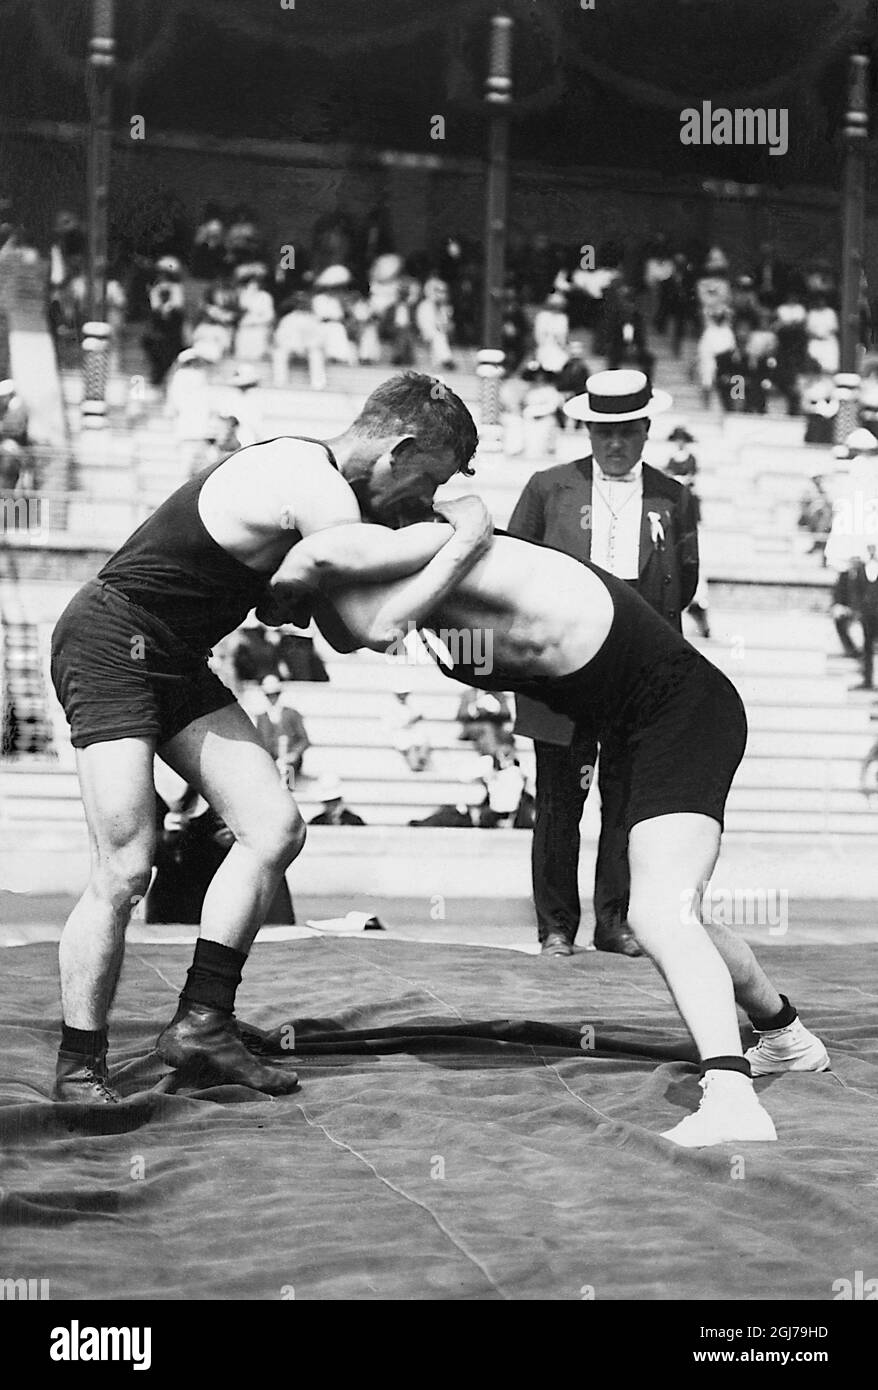 DATEI 1912 Wrestling bei den Olympischen Spielen in Stockholm 1912. Hanssen aus Dänemark gegen Urvikko aus Finnland. Foto:Scanpix Historical/ Kod:1900 Scanpix SCHWEDEN Stockfoto